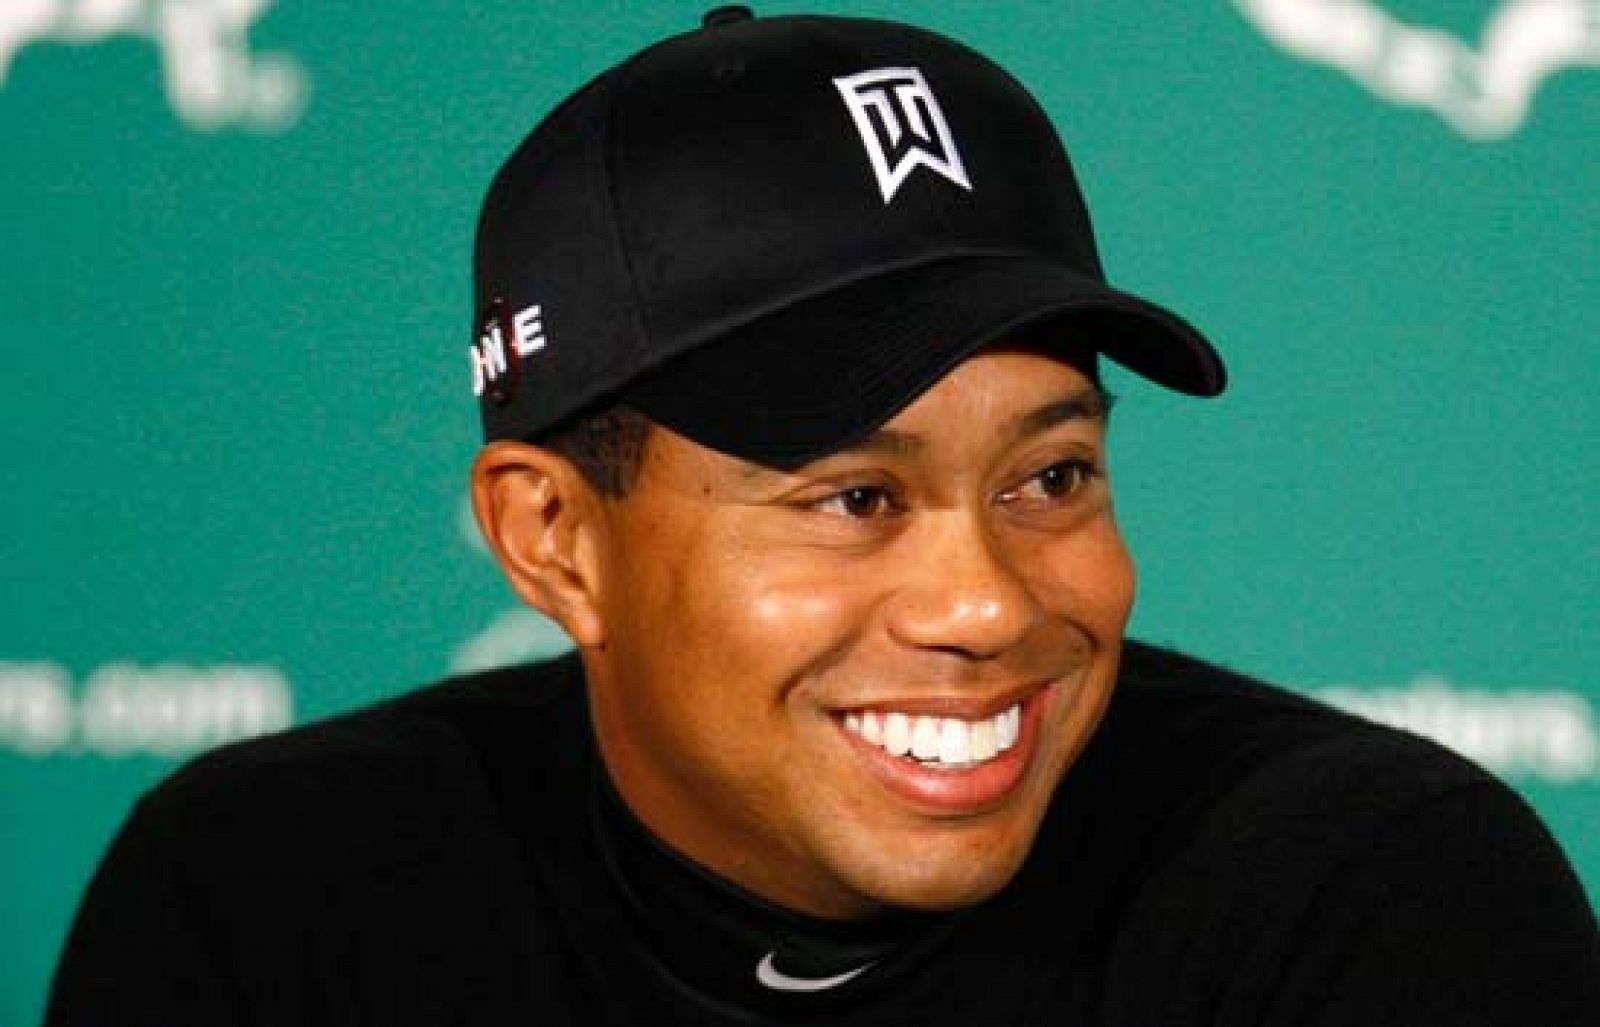 Empieza el Masters de Augusta, el primer gran torneo de la temporada de Golf. Tras su larga lesión, Tiger Woods competirá para ponerse su quinta chaqueta verde.